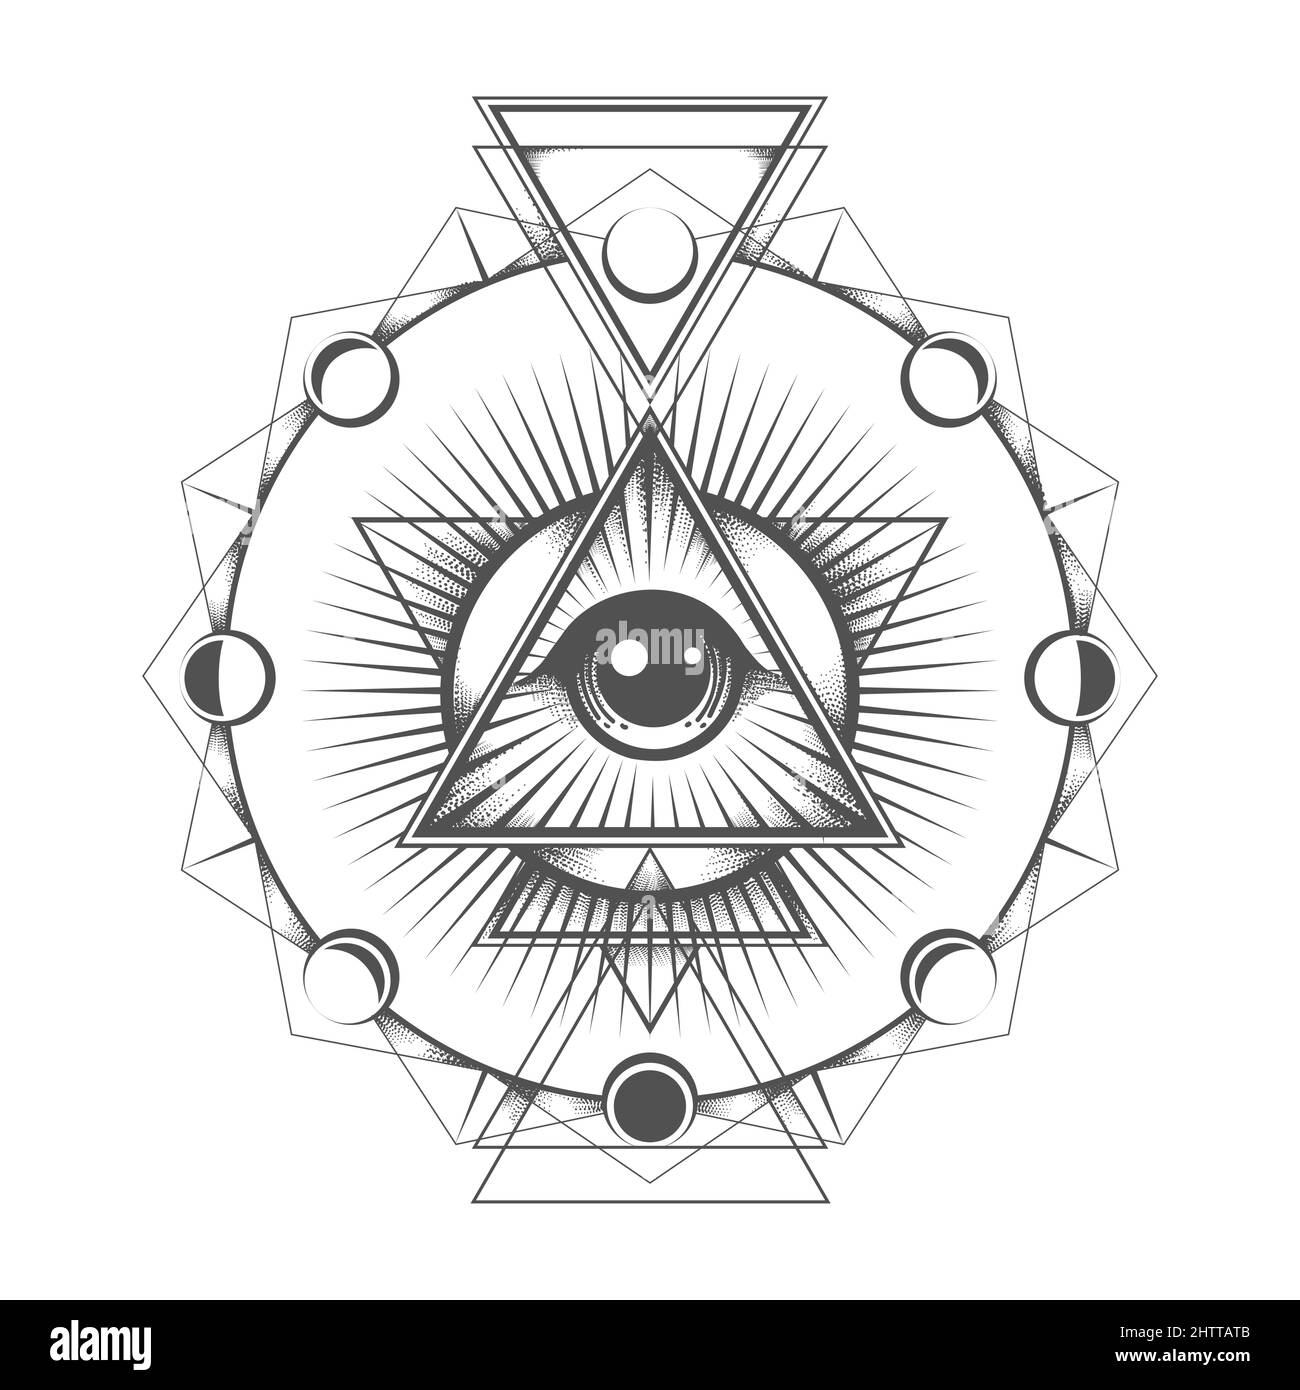 pyramid eye tattoo designs